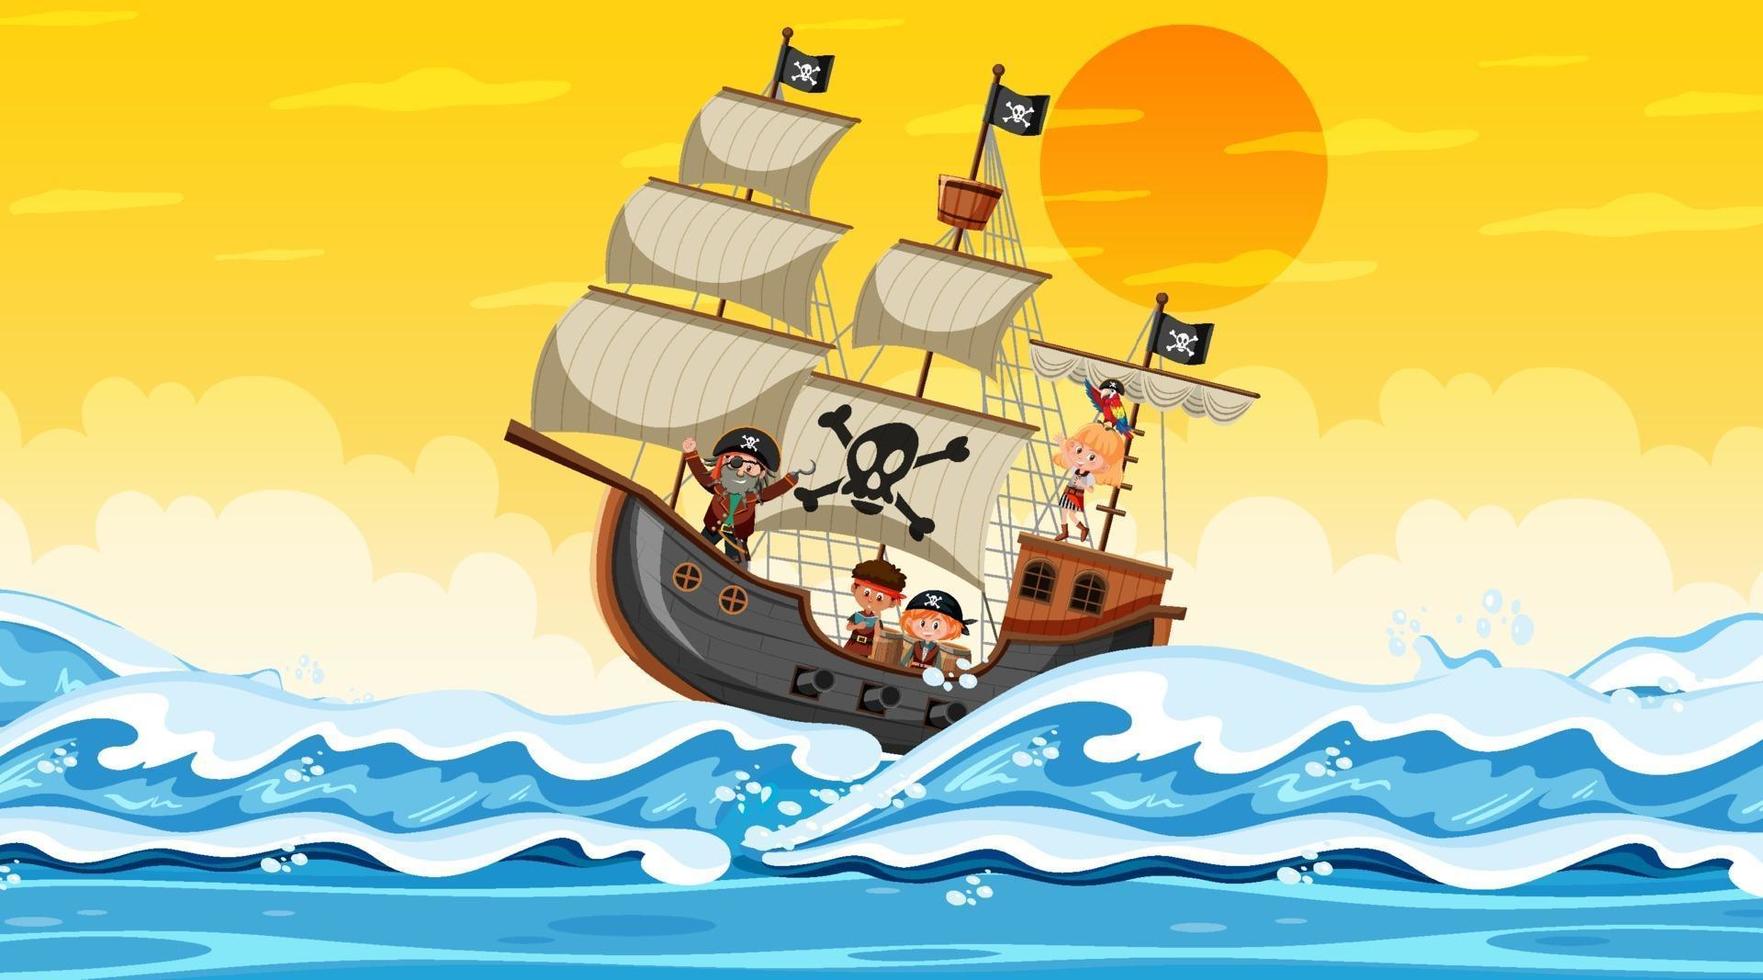 oceaan met piratenschip bij zonsondergangscène in cartoonstijl vector